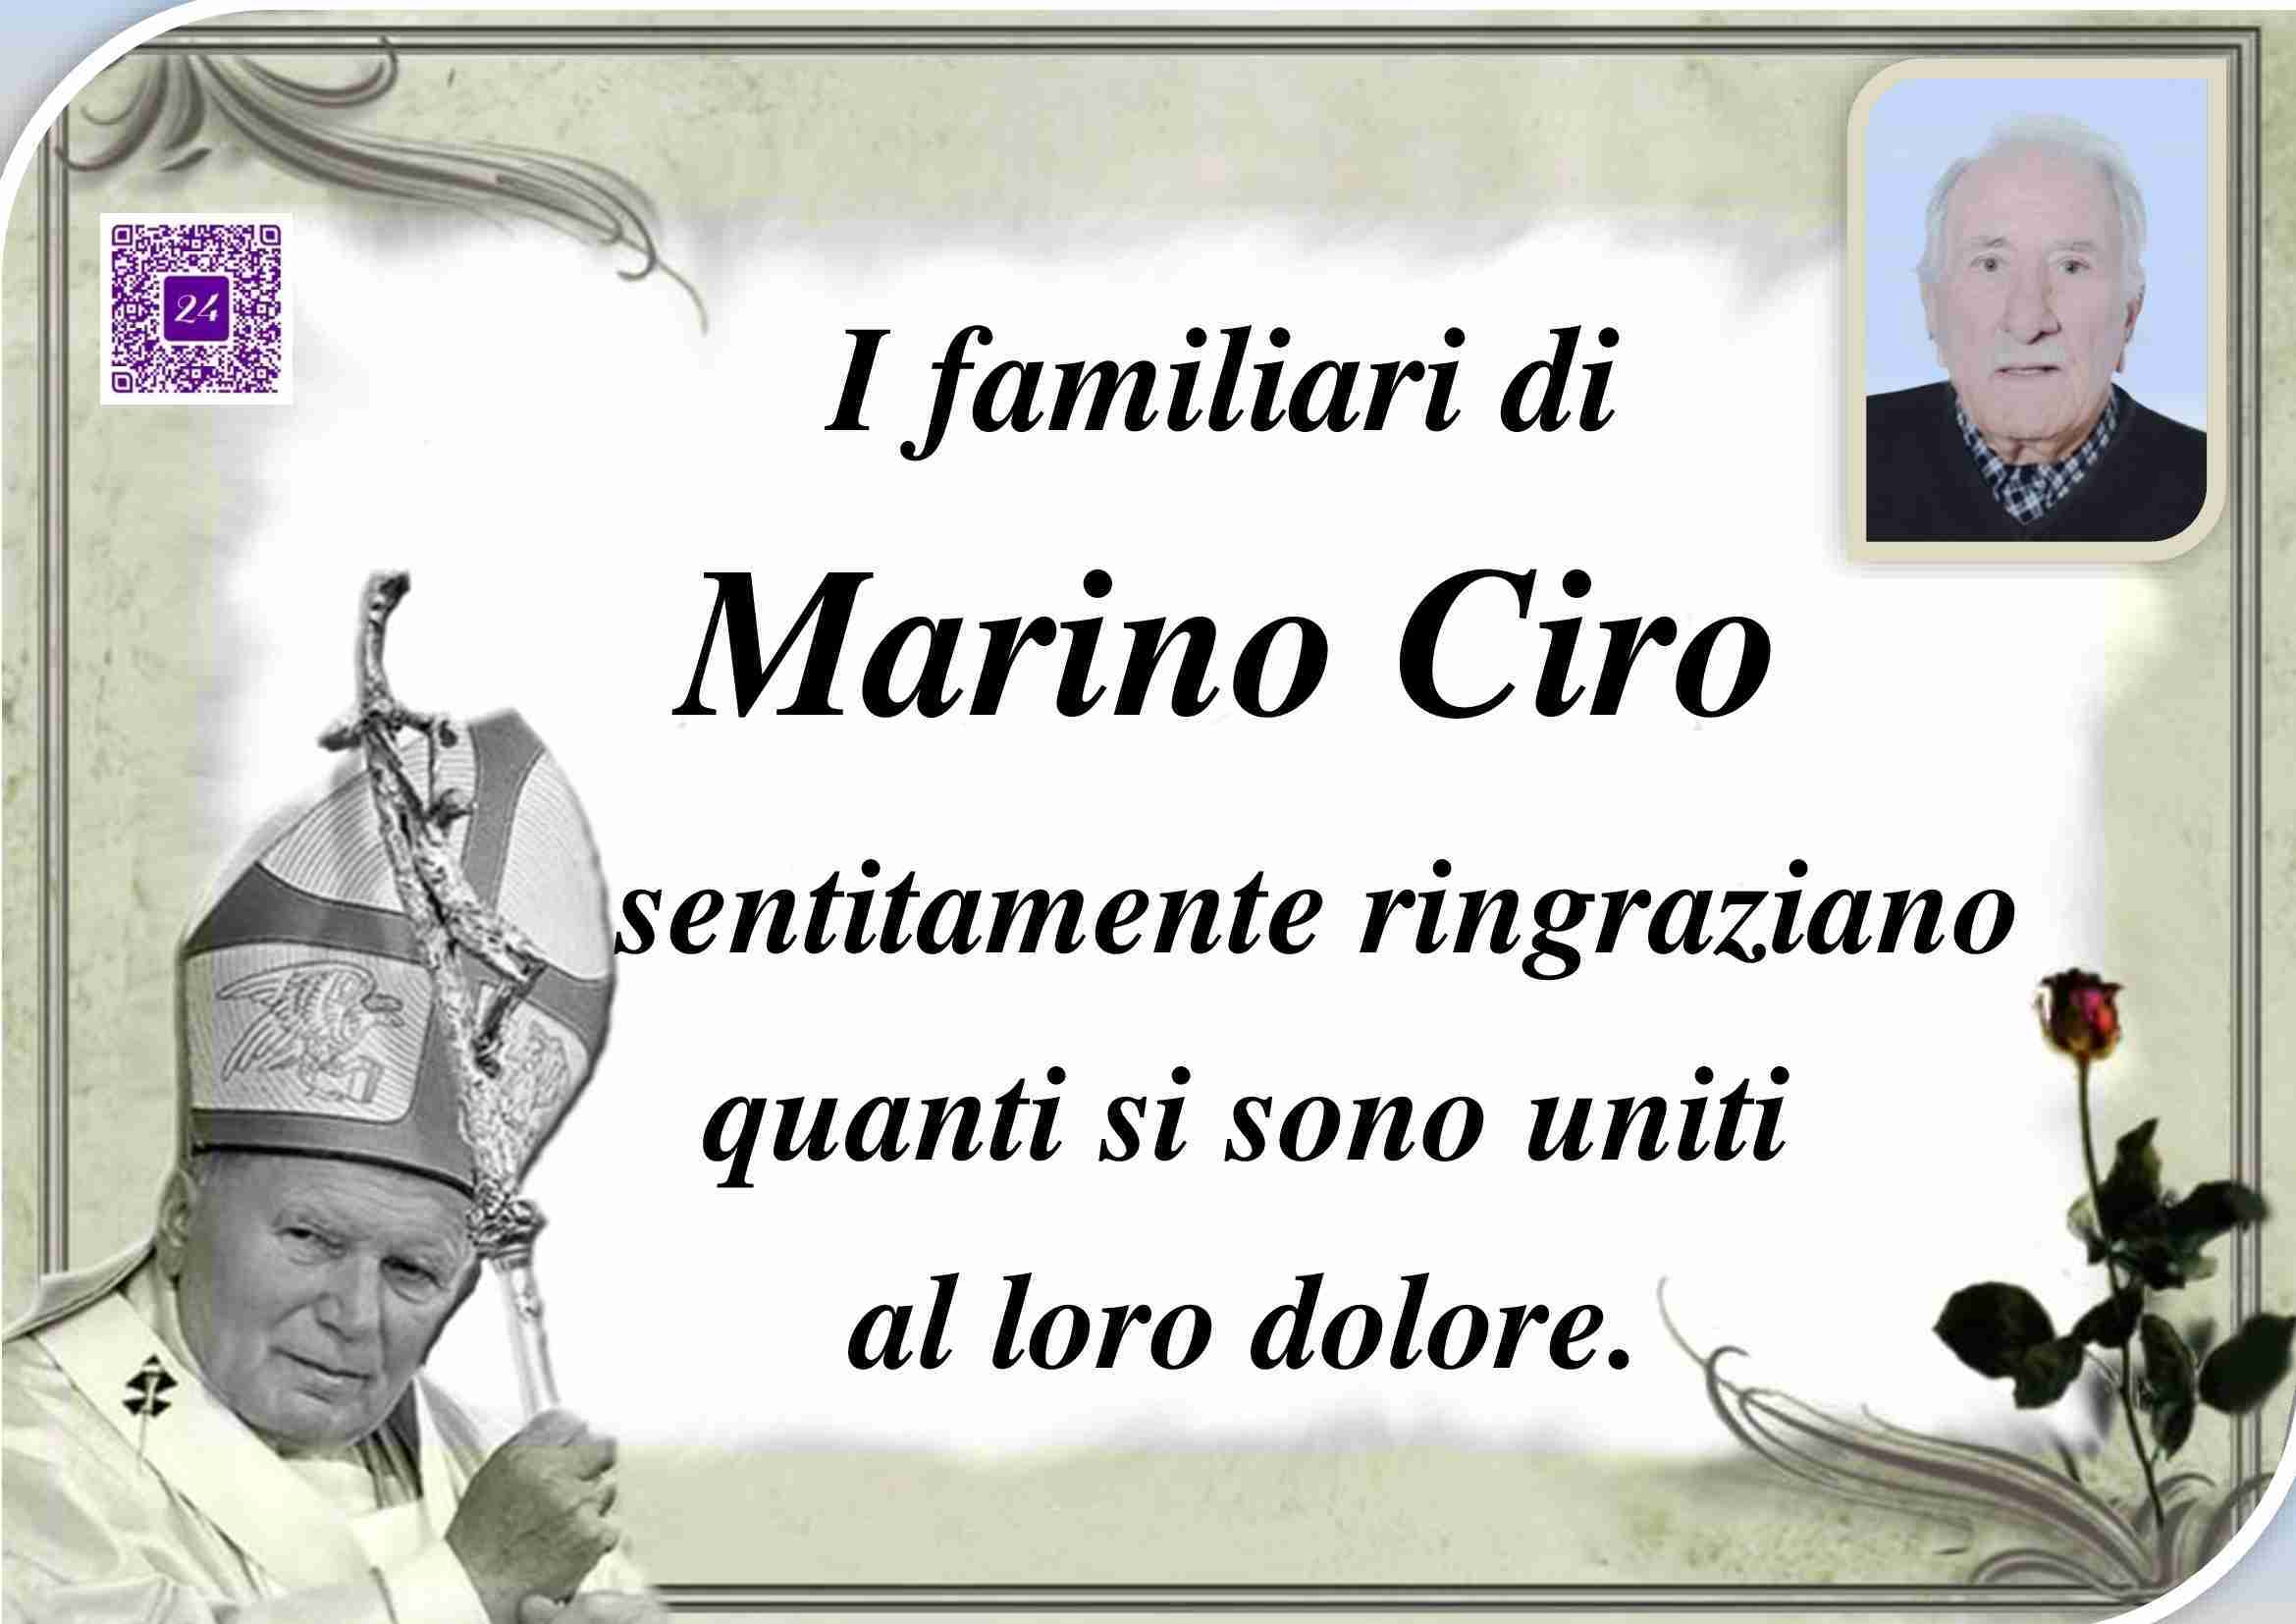 Ciro Marino